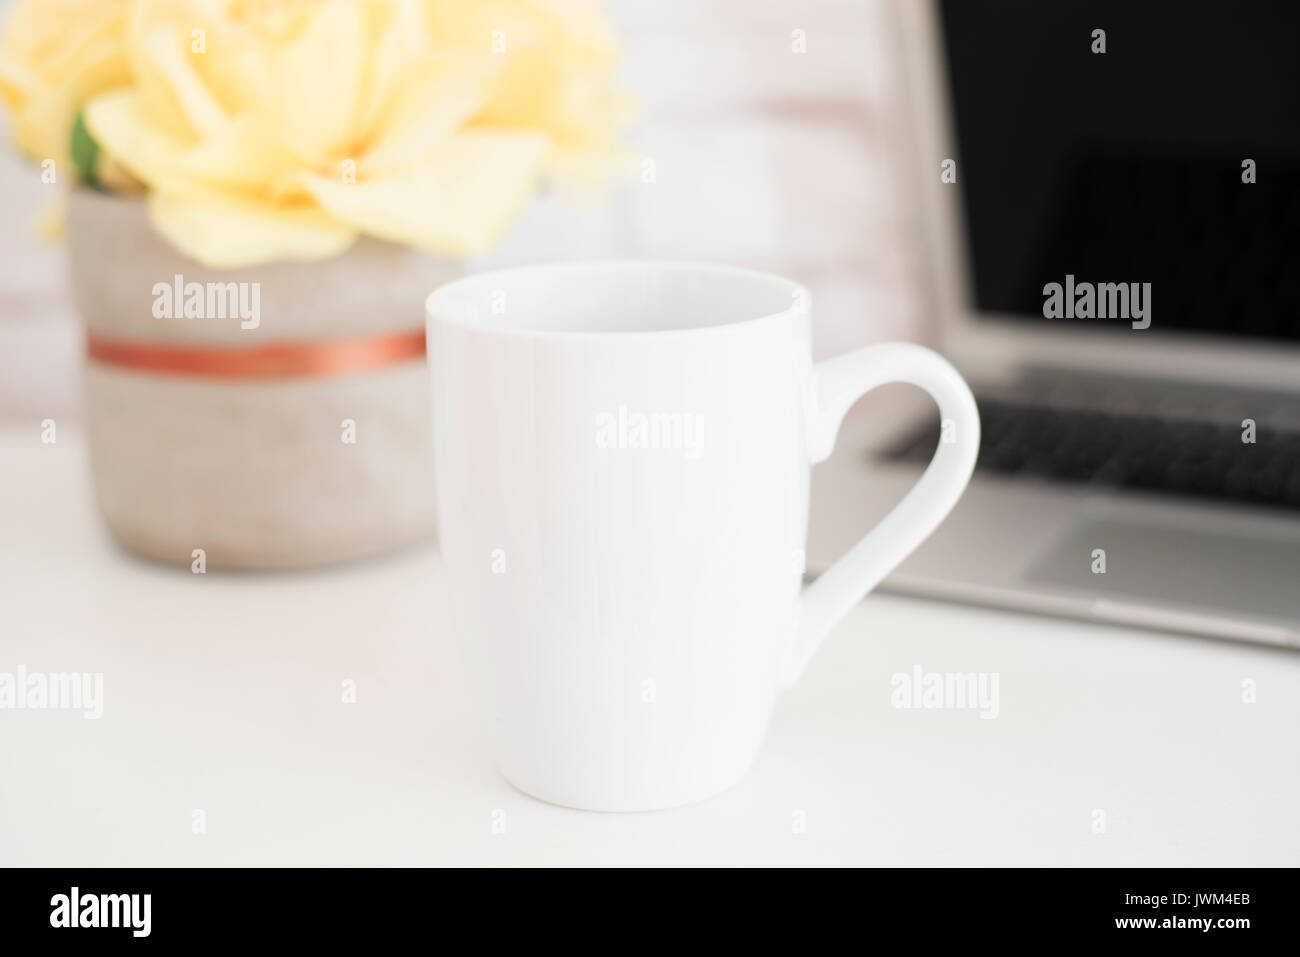 Mug Mockup. Coffee Cup Template. Coffee Mug Printing Design Template. White Mug Mockup. Blank Mug. Styled Stock Product Image. Styled Stock Photograph Stock Photo